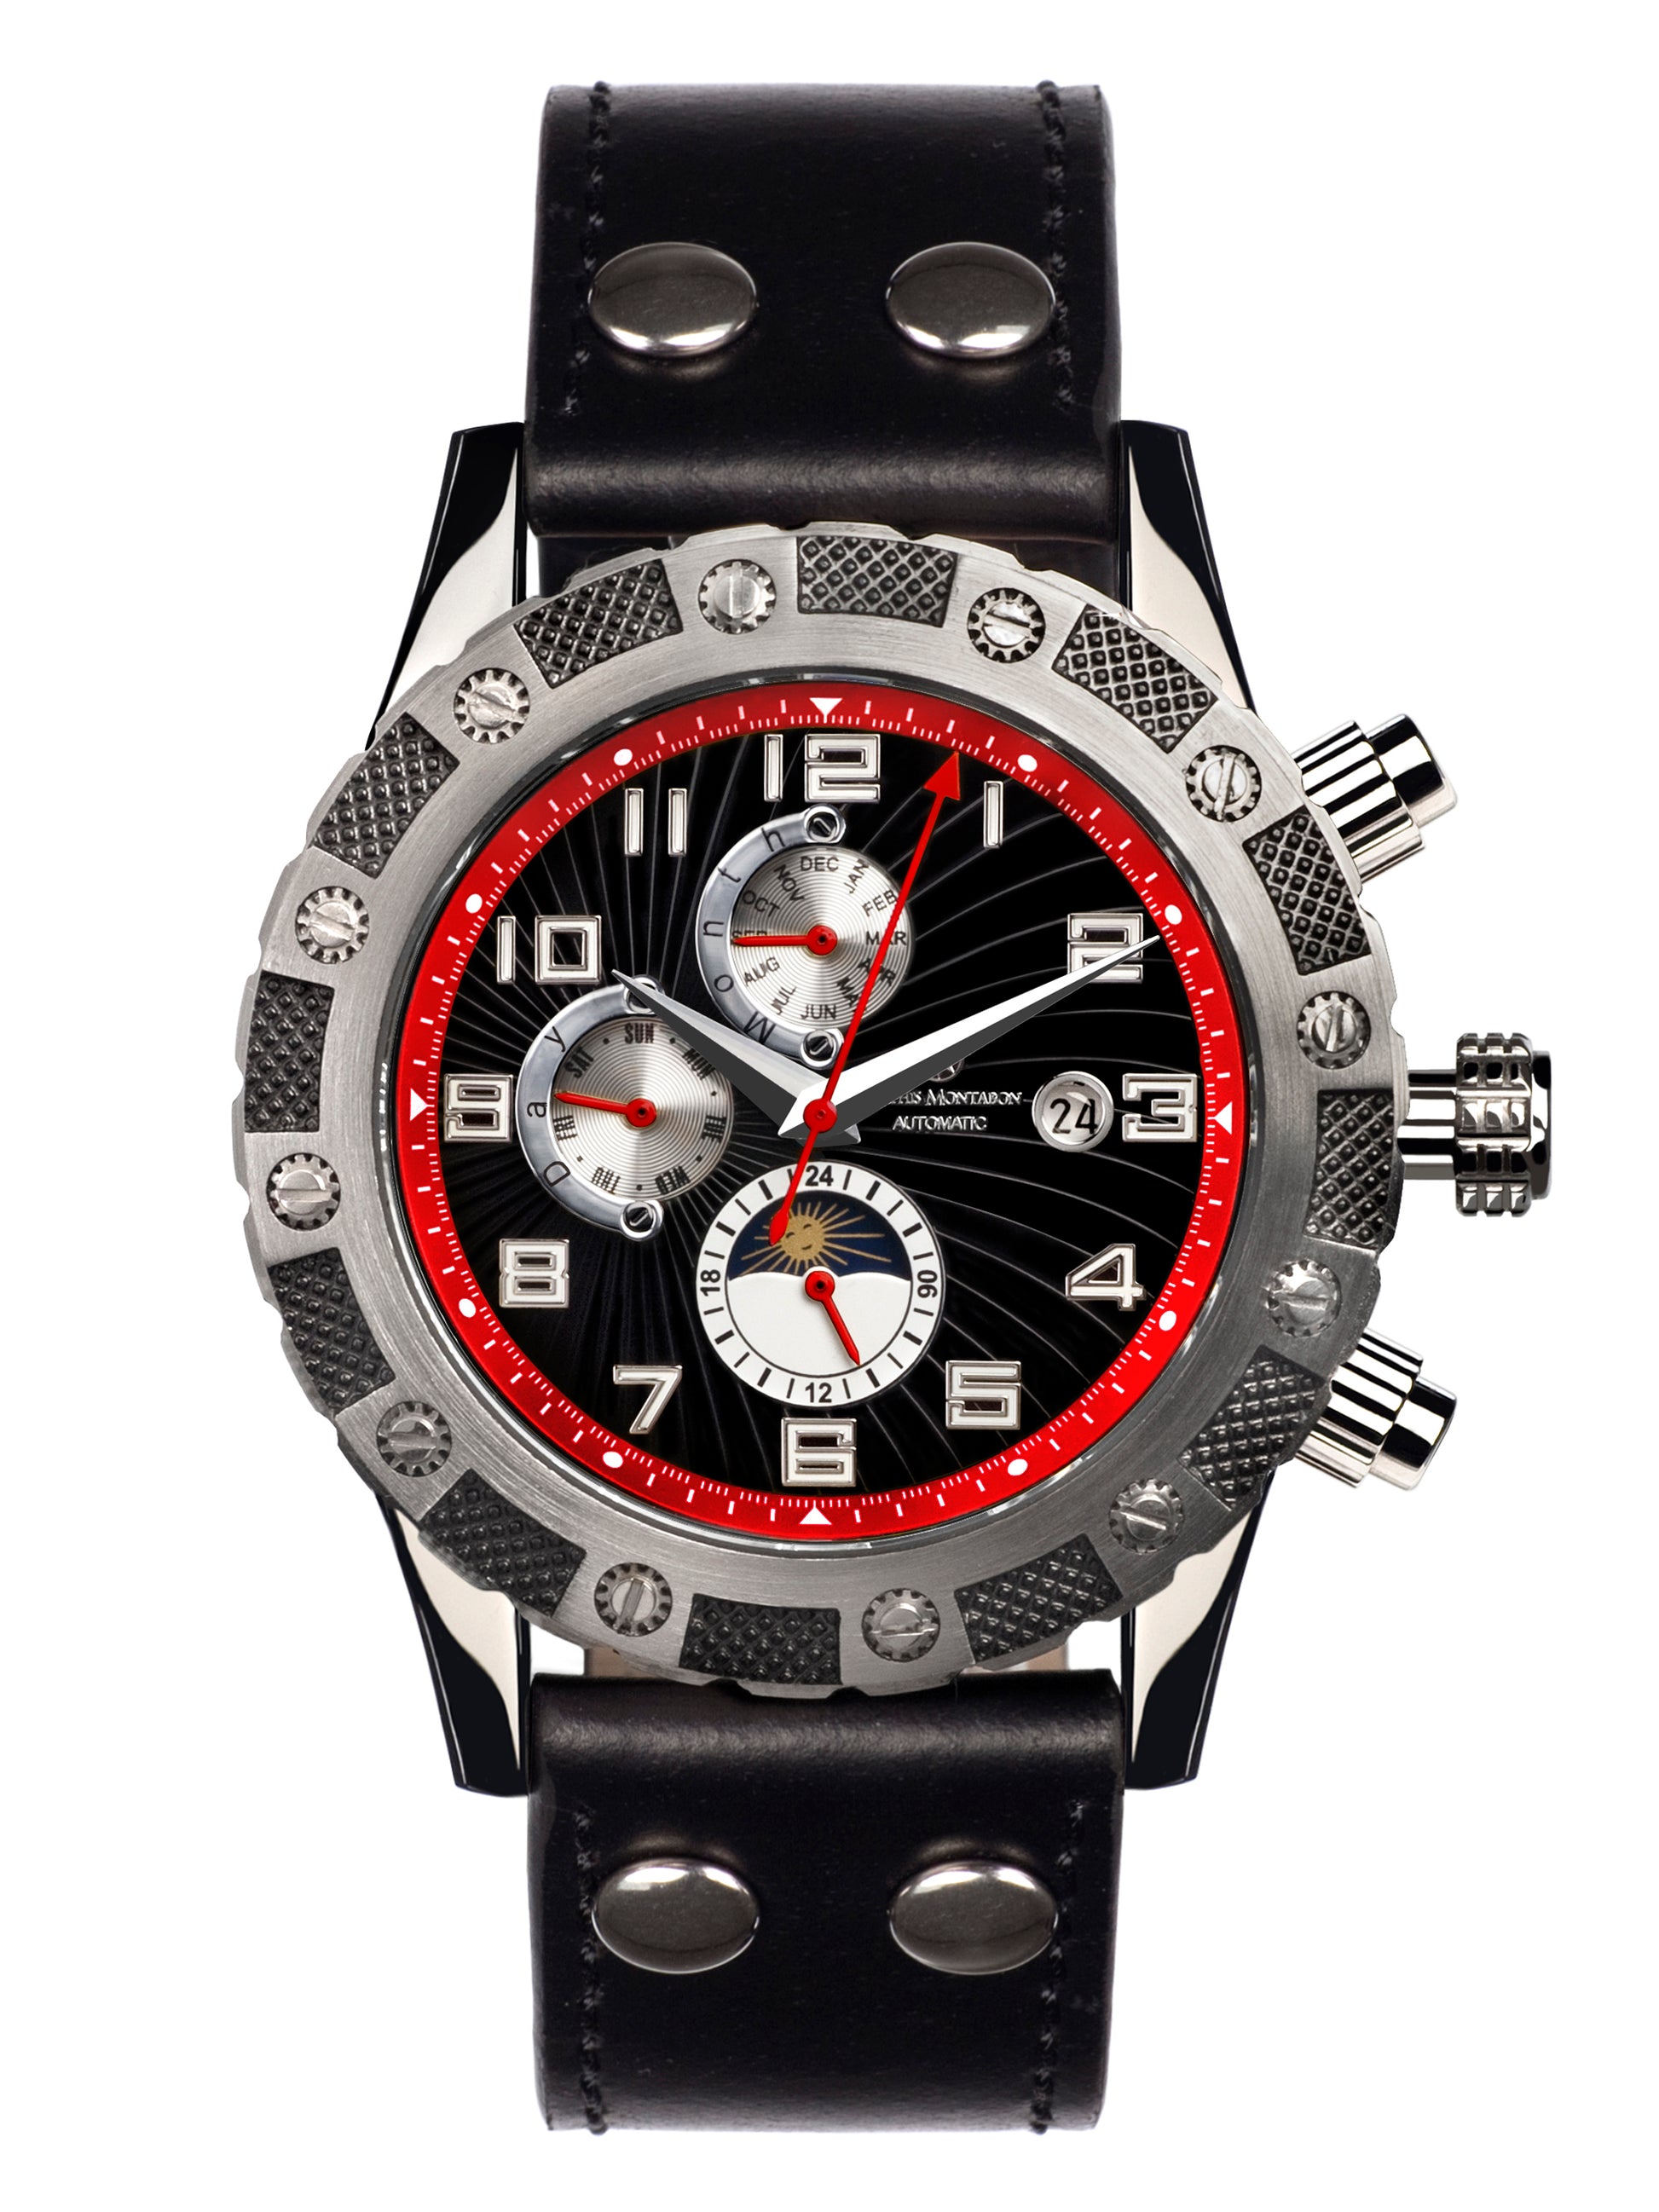 Automatic watches — Le Général — Mathis Montabon — rot